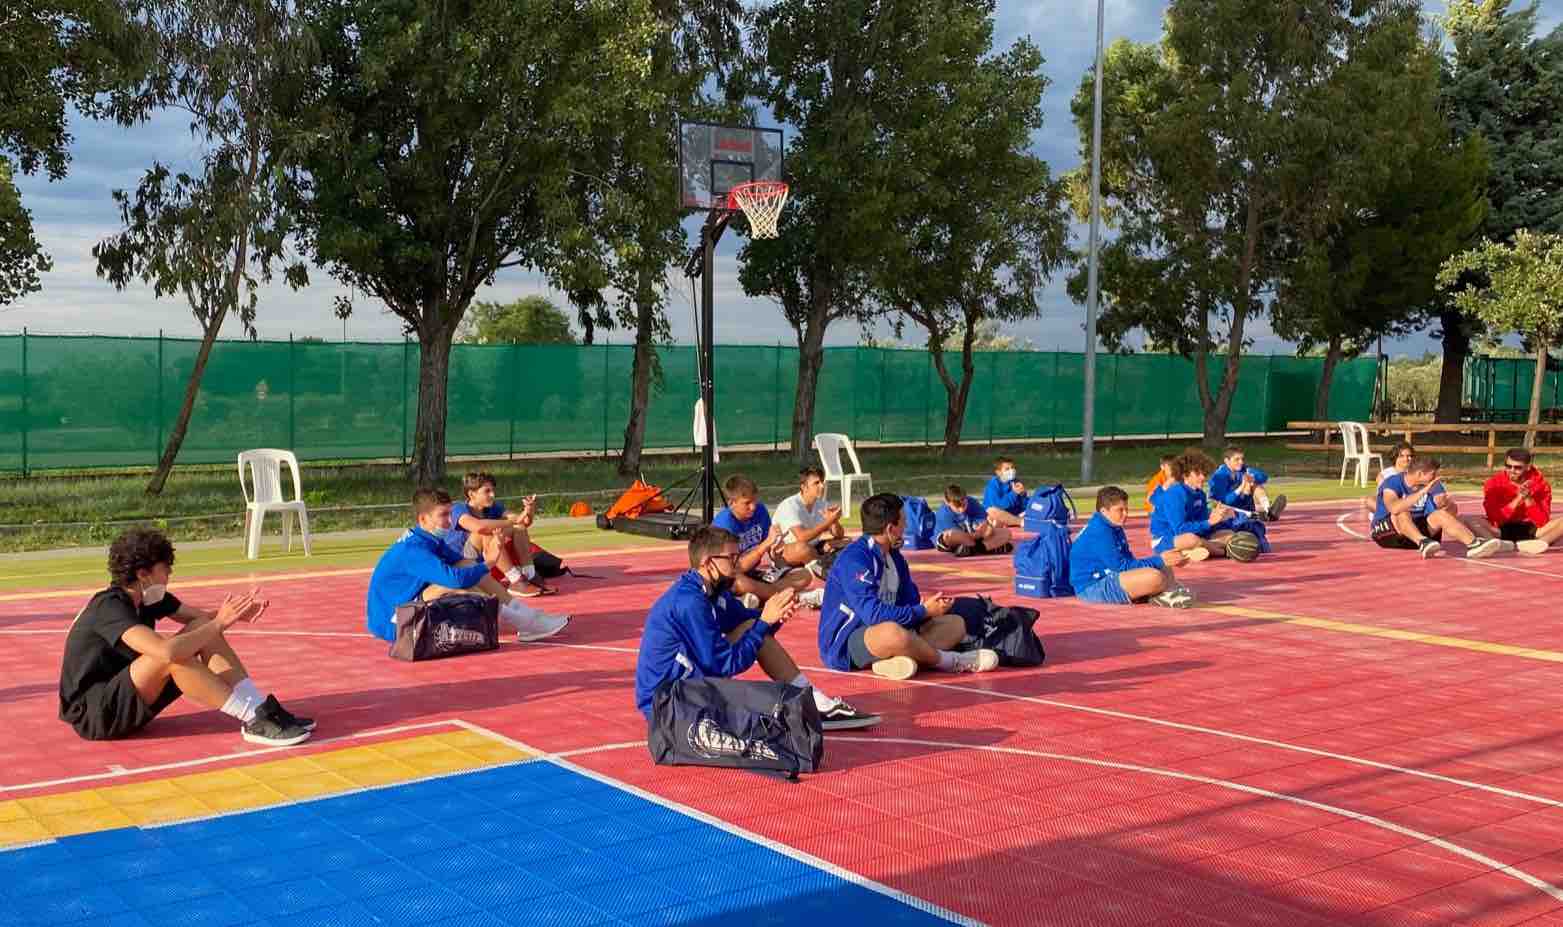 Giunge al termine la scuola estiva dell'Azzurra Basket di Lanciano. Gran galà conclusivo